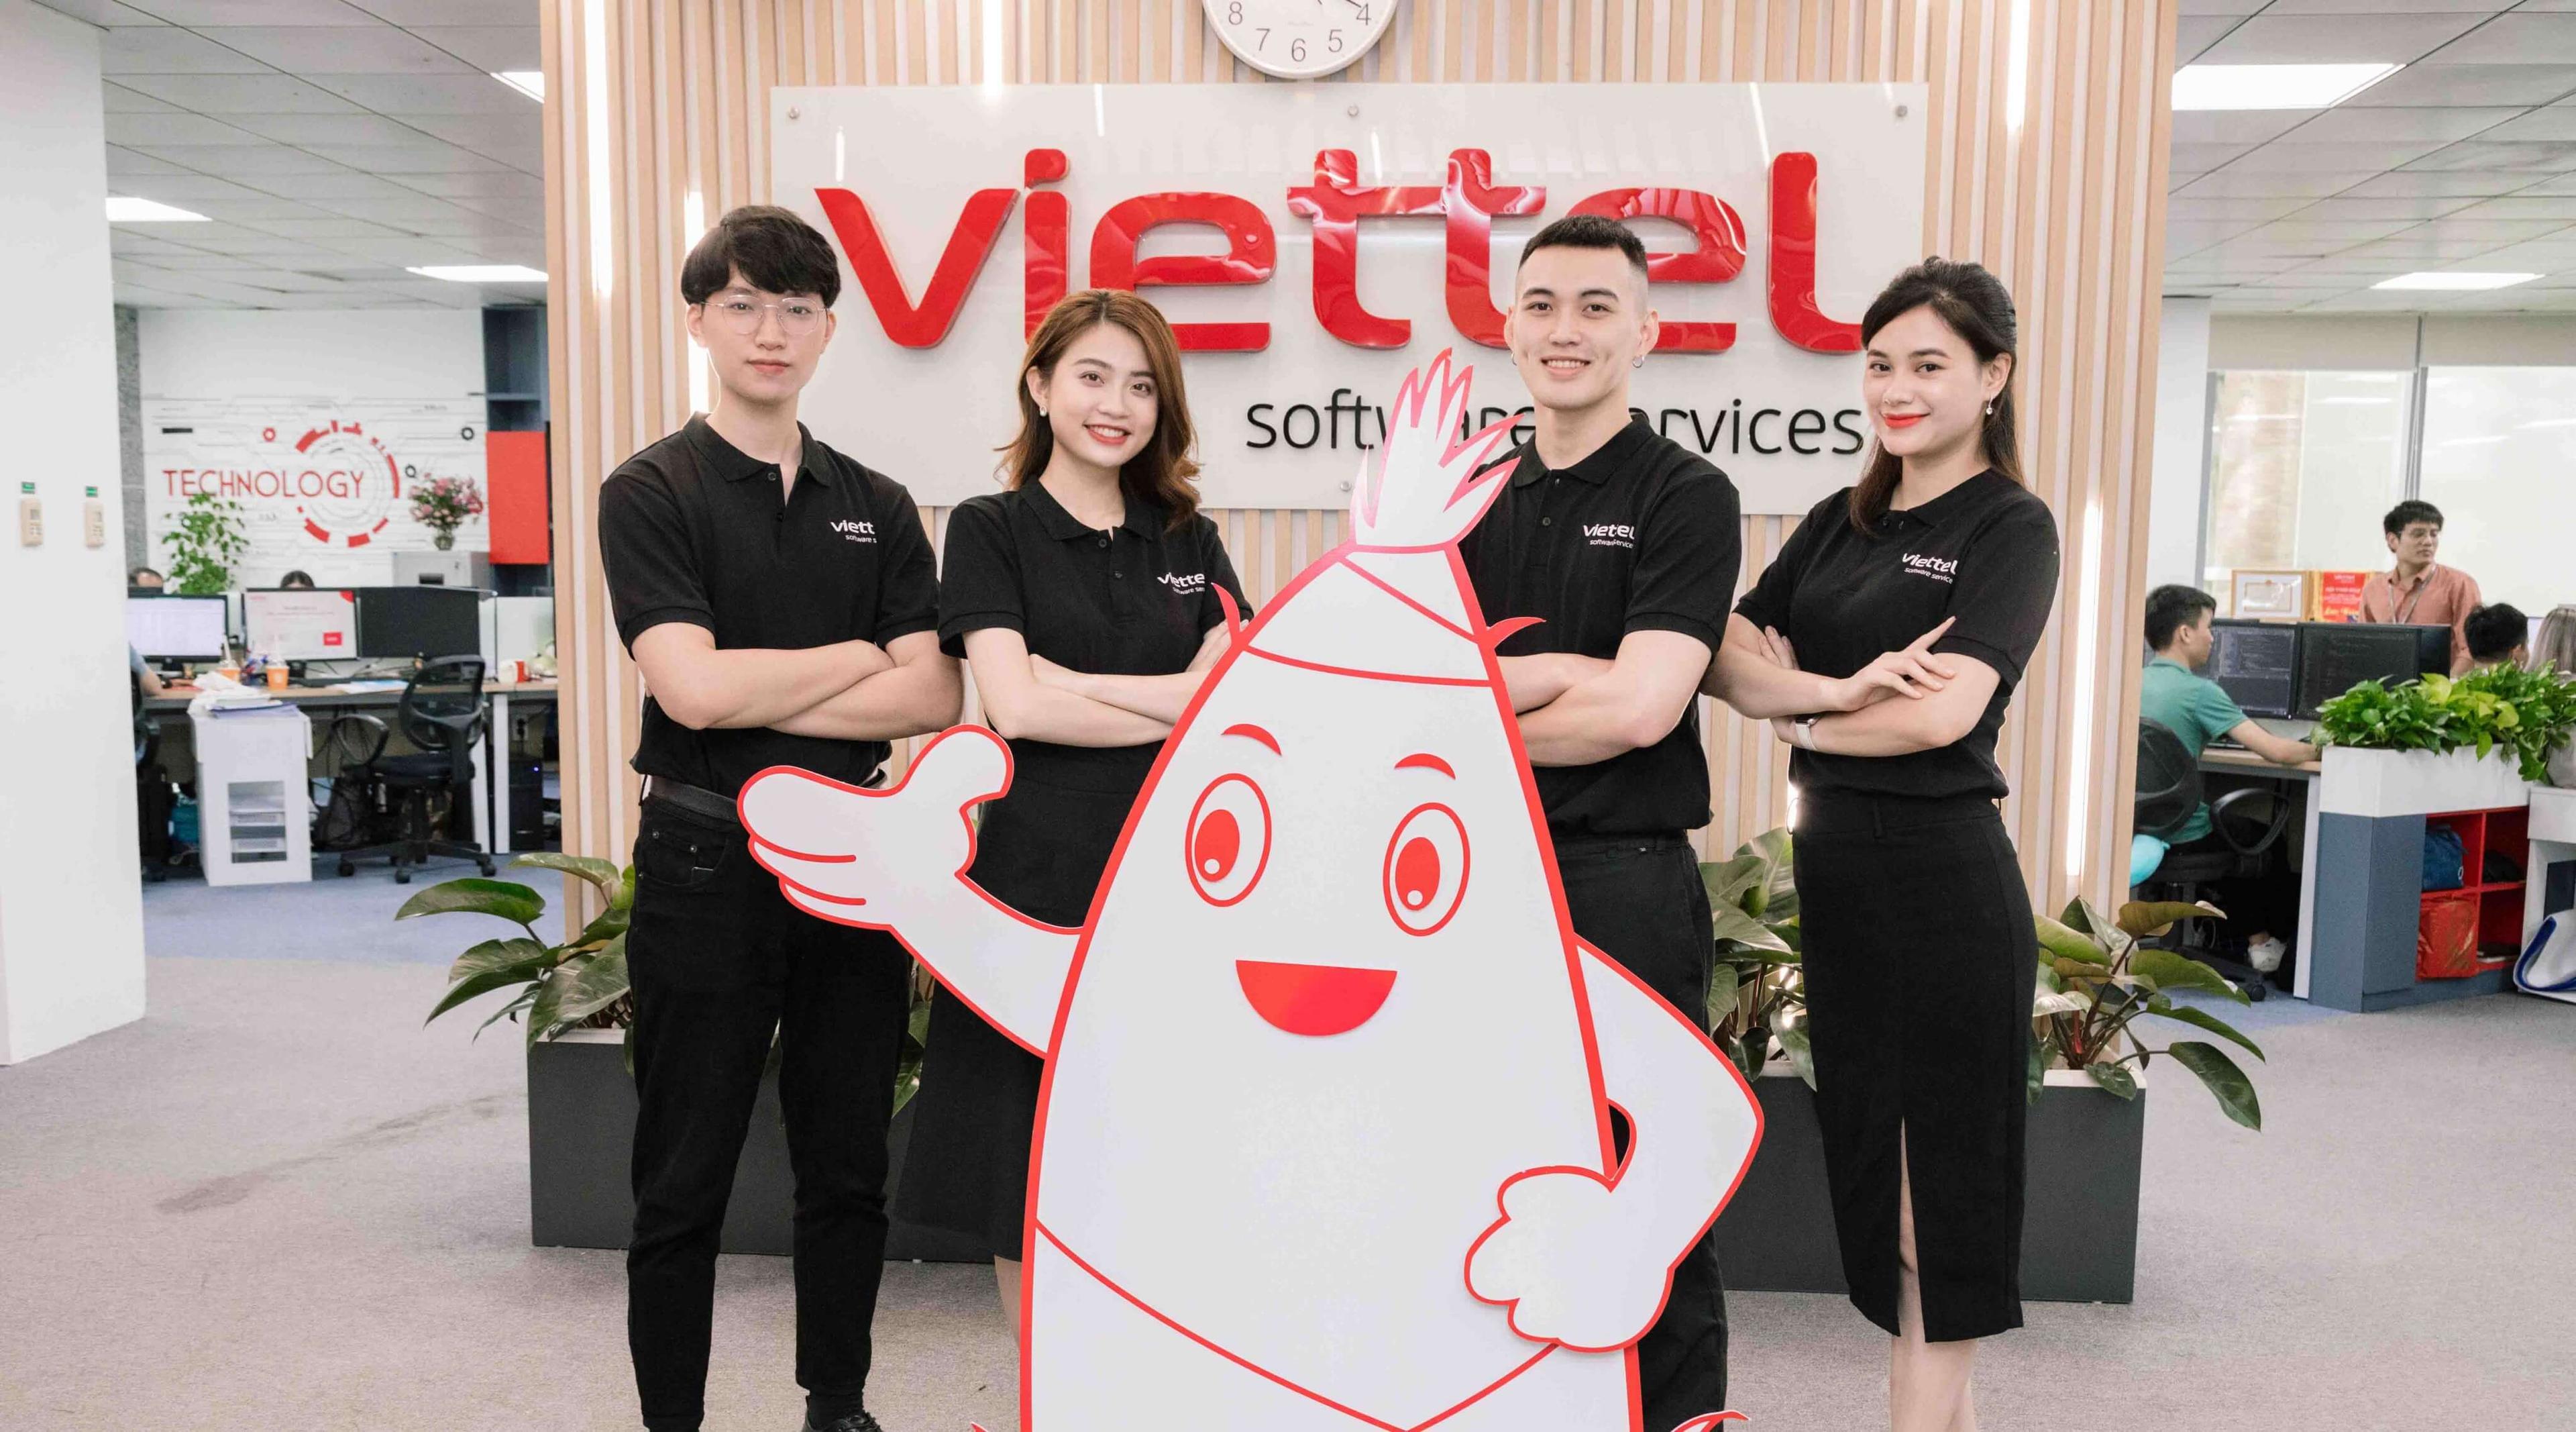 Viettel Software Services